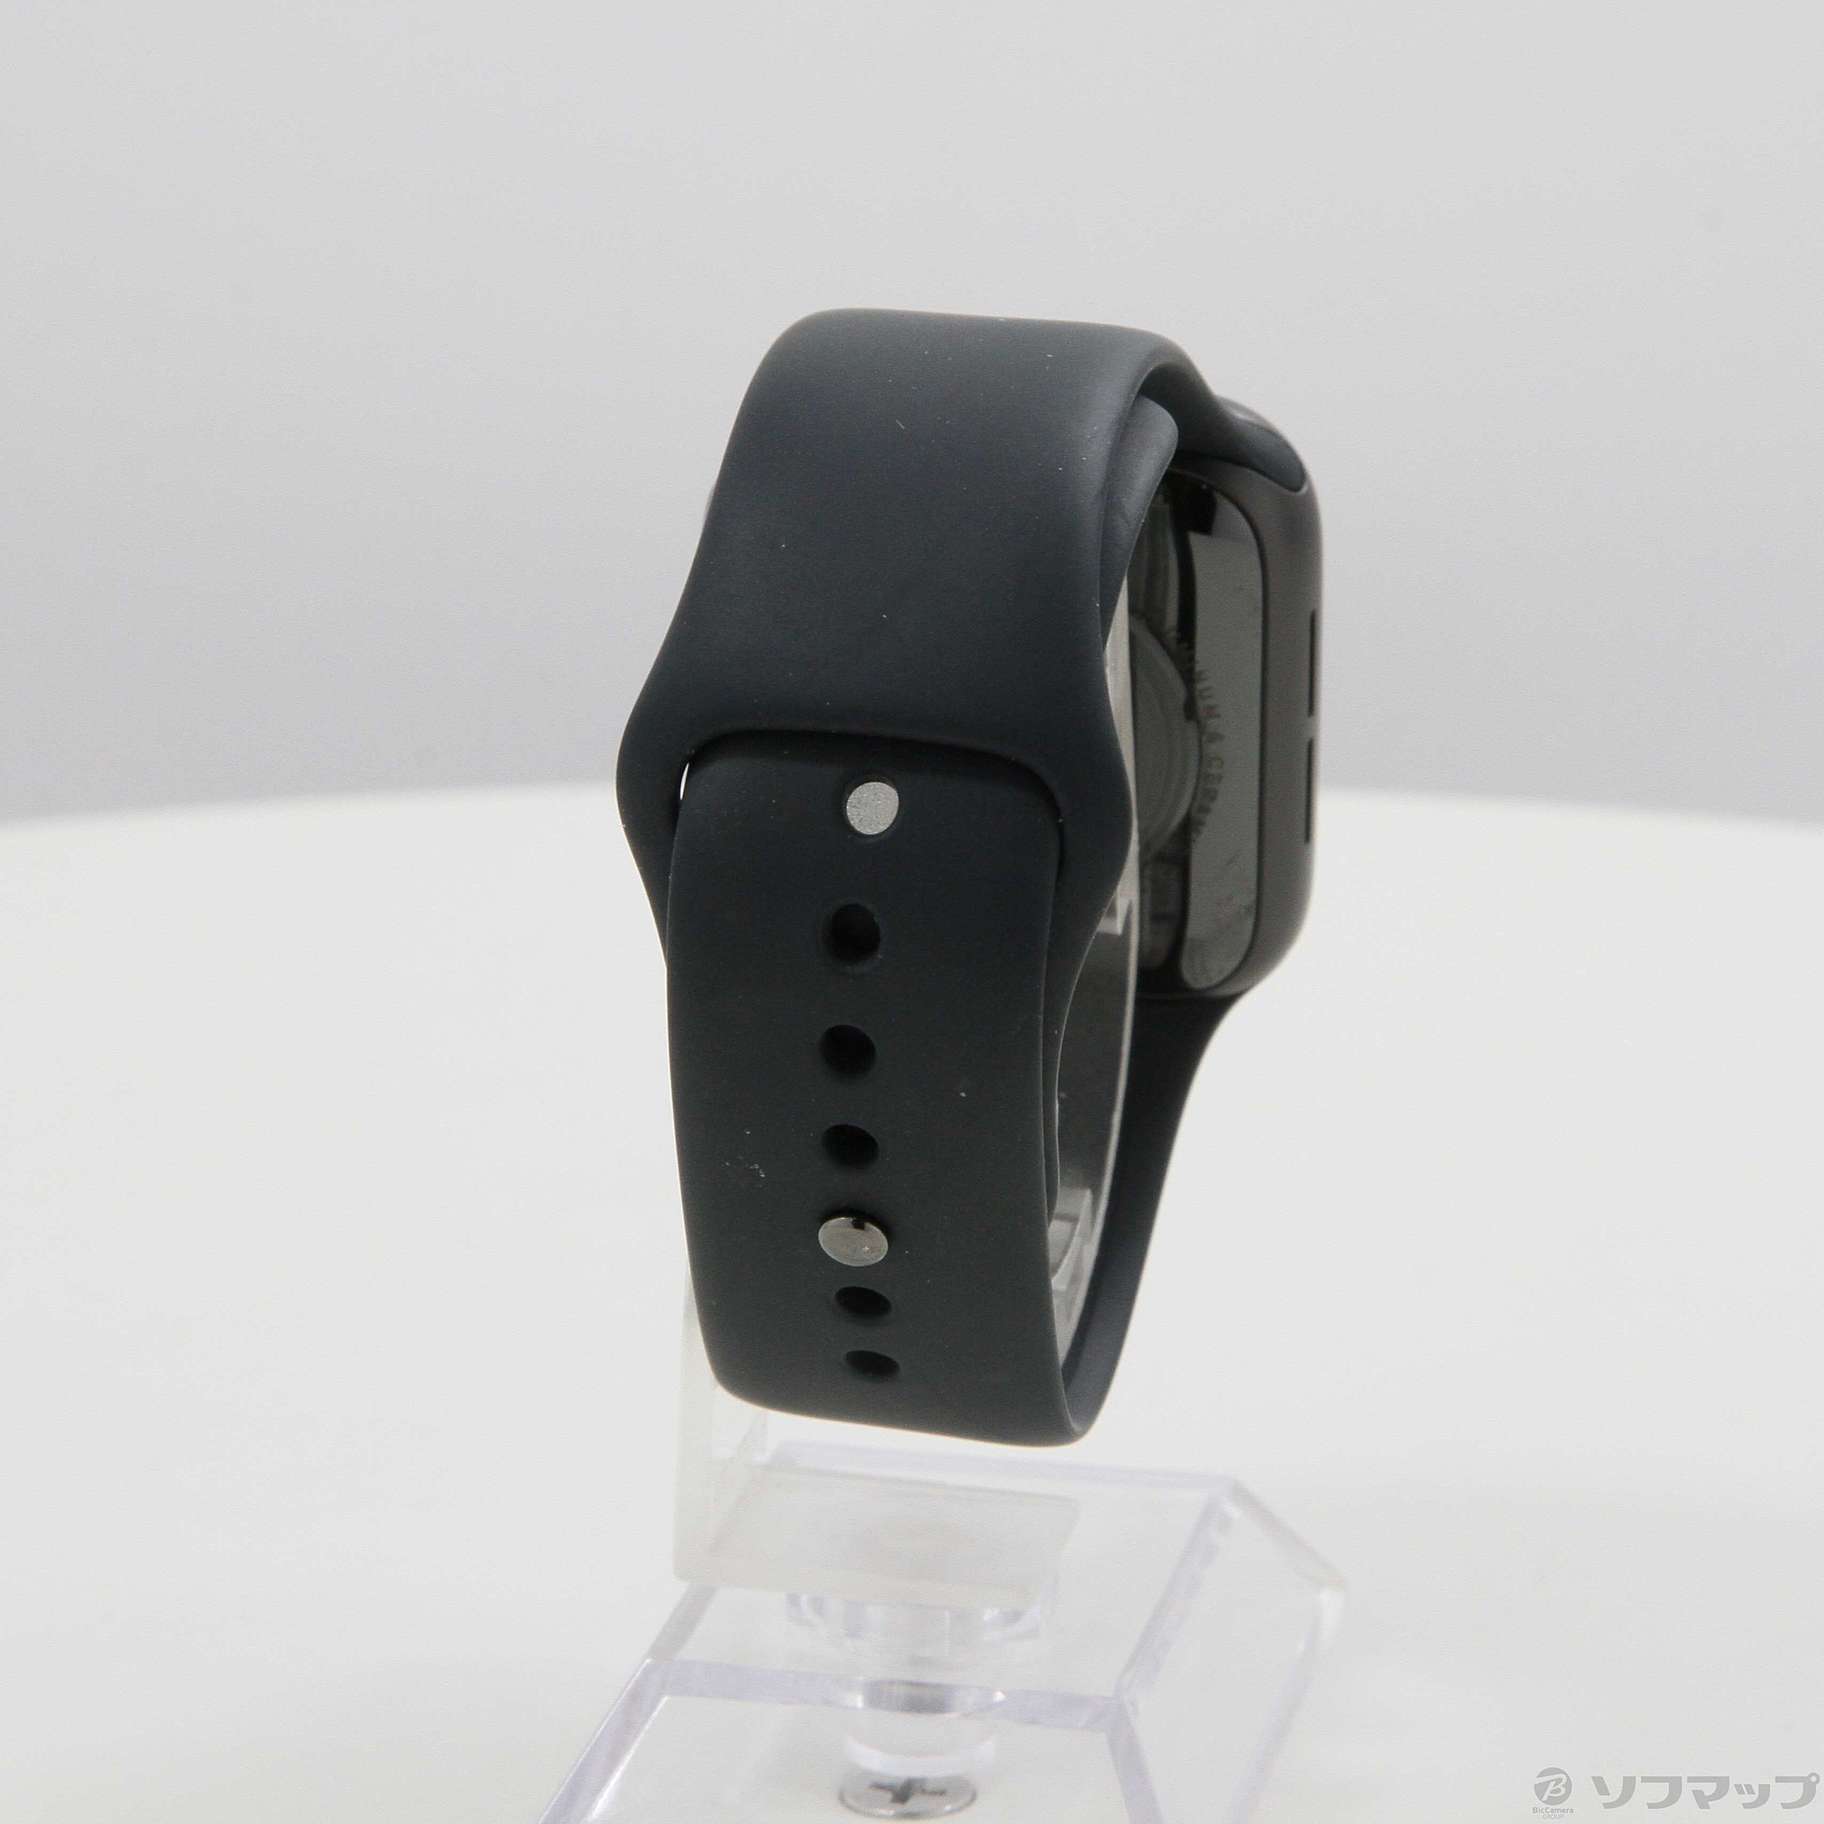 中古】Apple Watch SE 第1世代 GPS 40mm スペースグレイアルミニウム